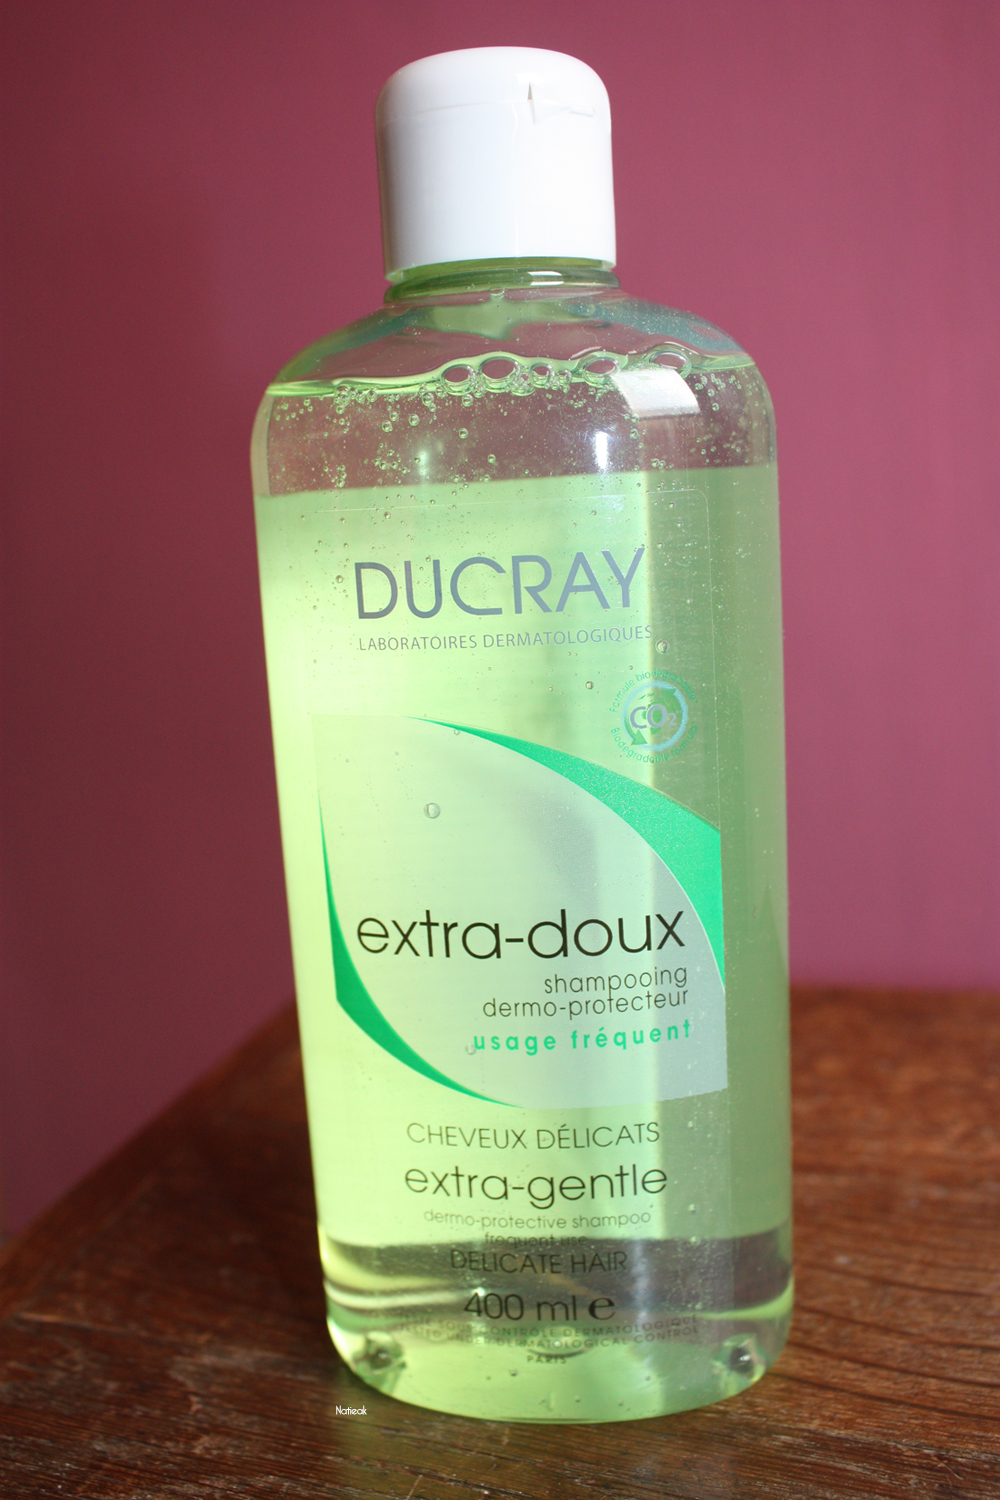 Le shampoing extra-doux de Ducray